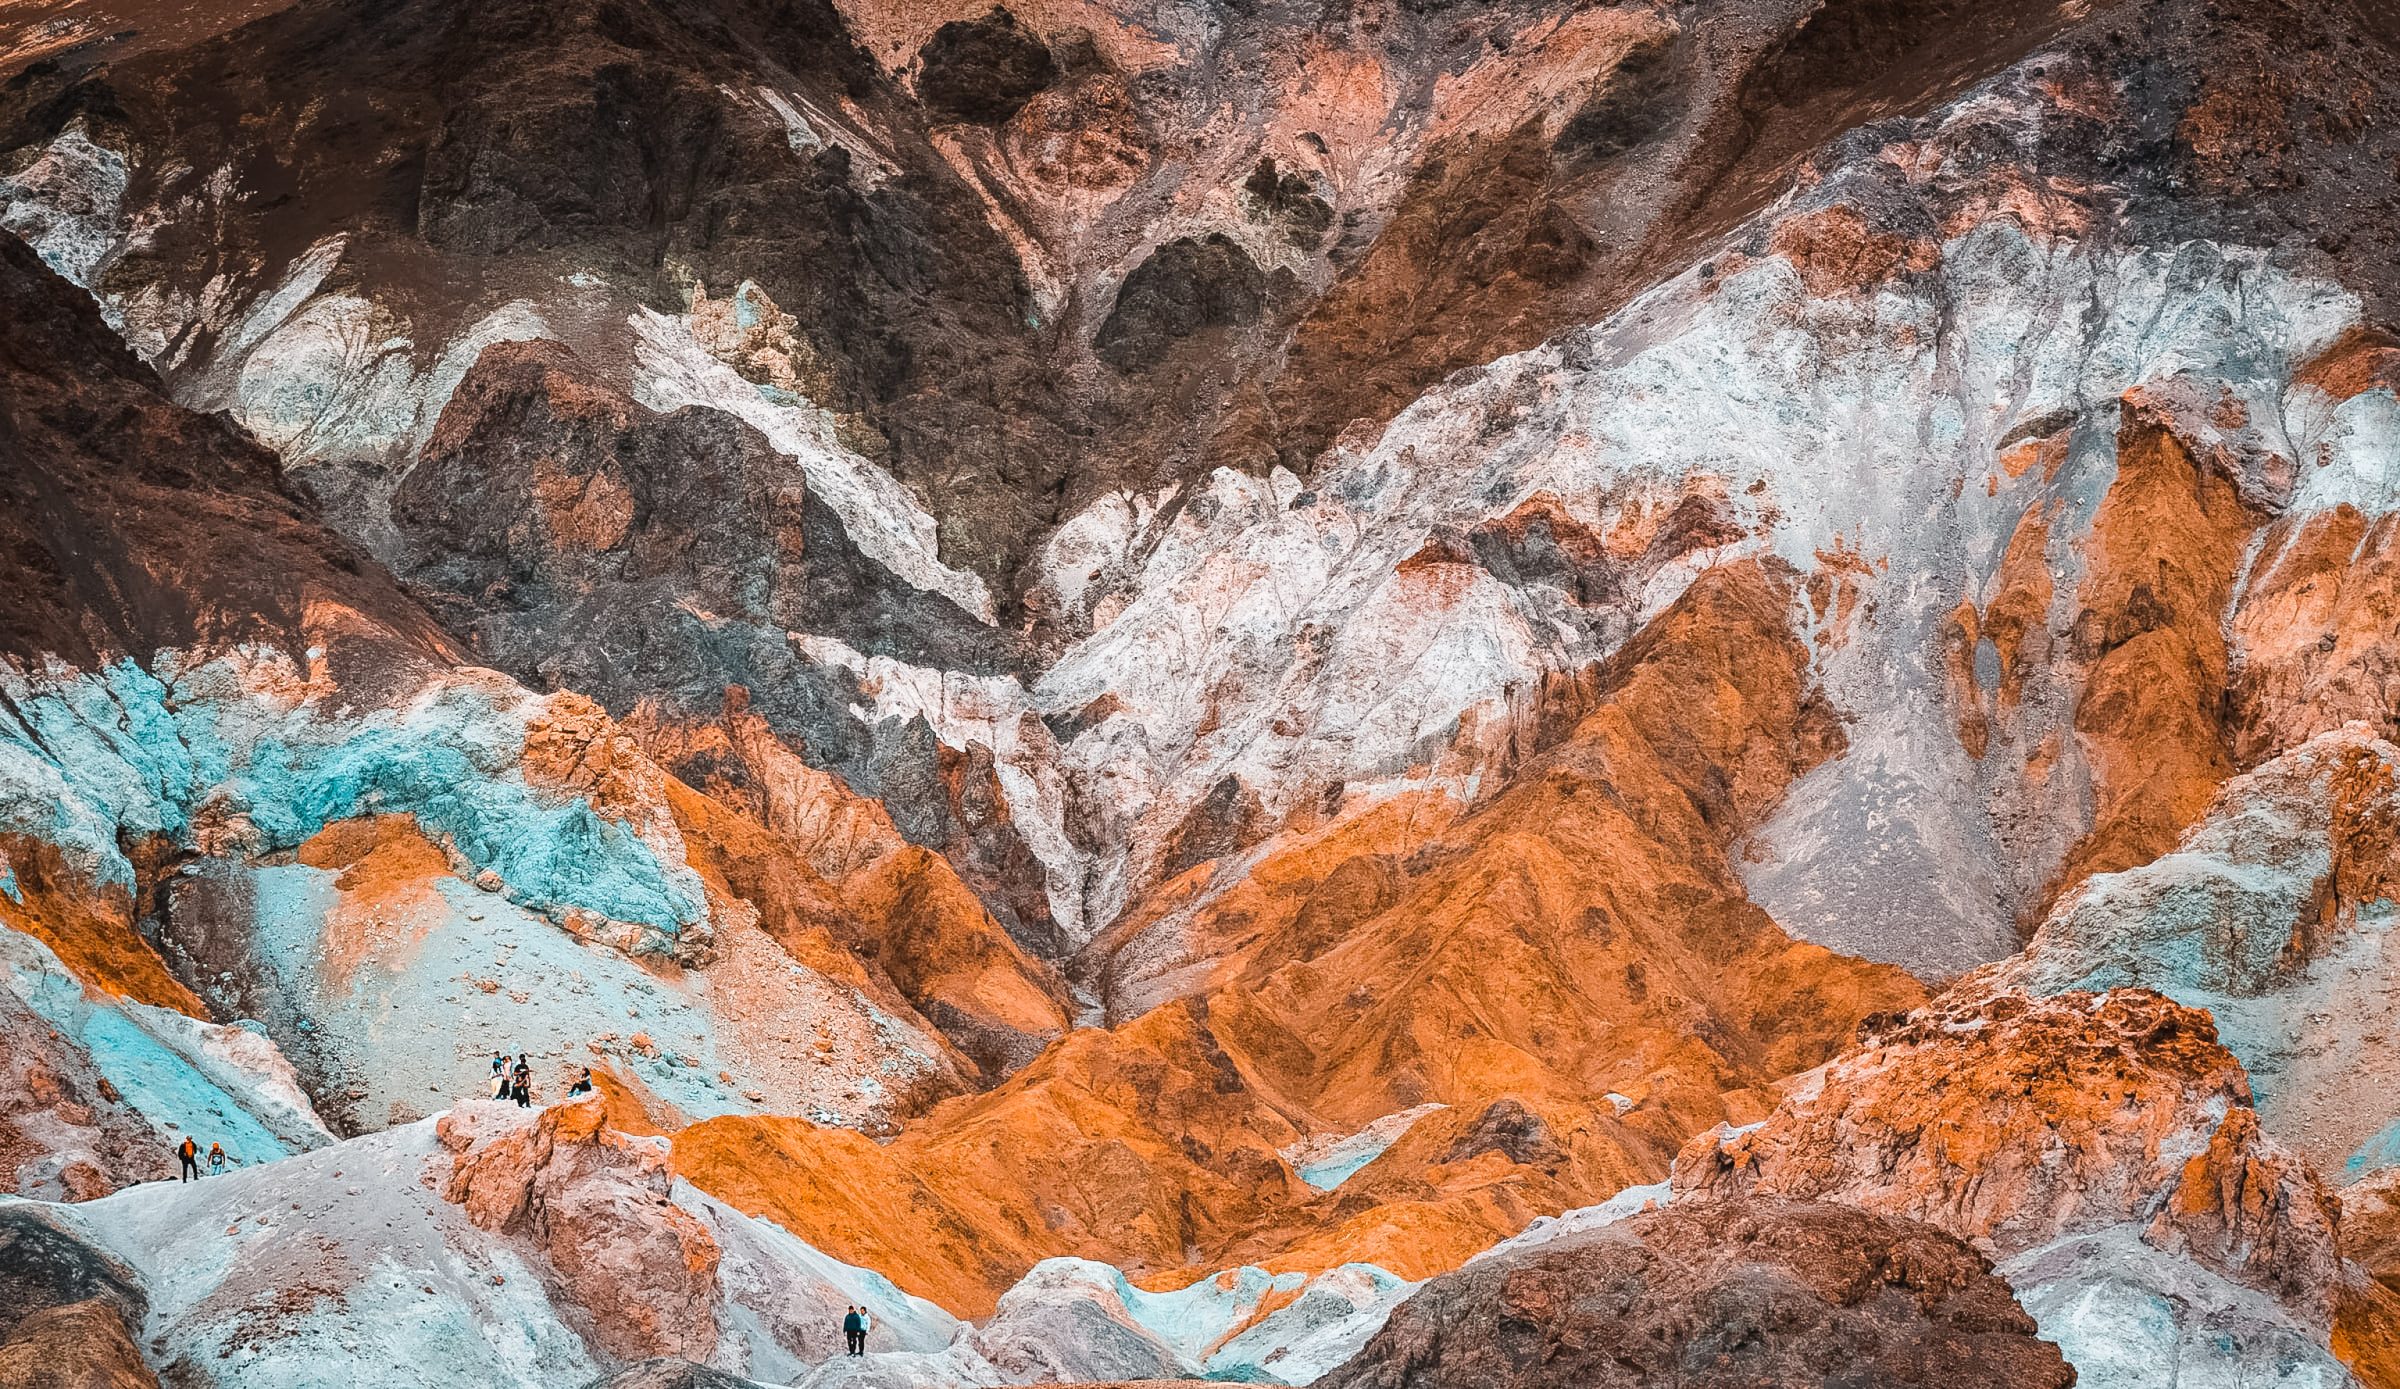 Palette des Künstlers | Tipps für Death Valley